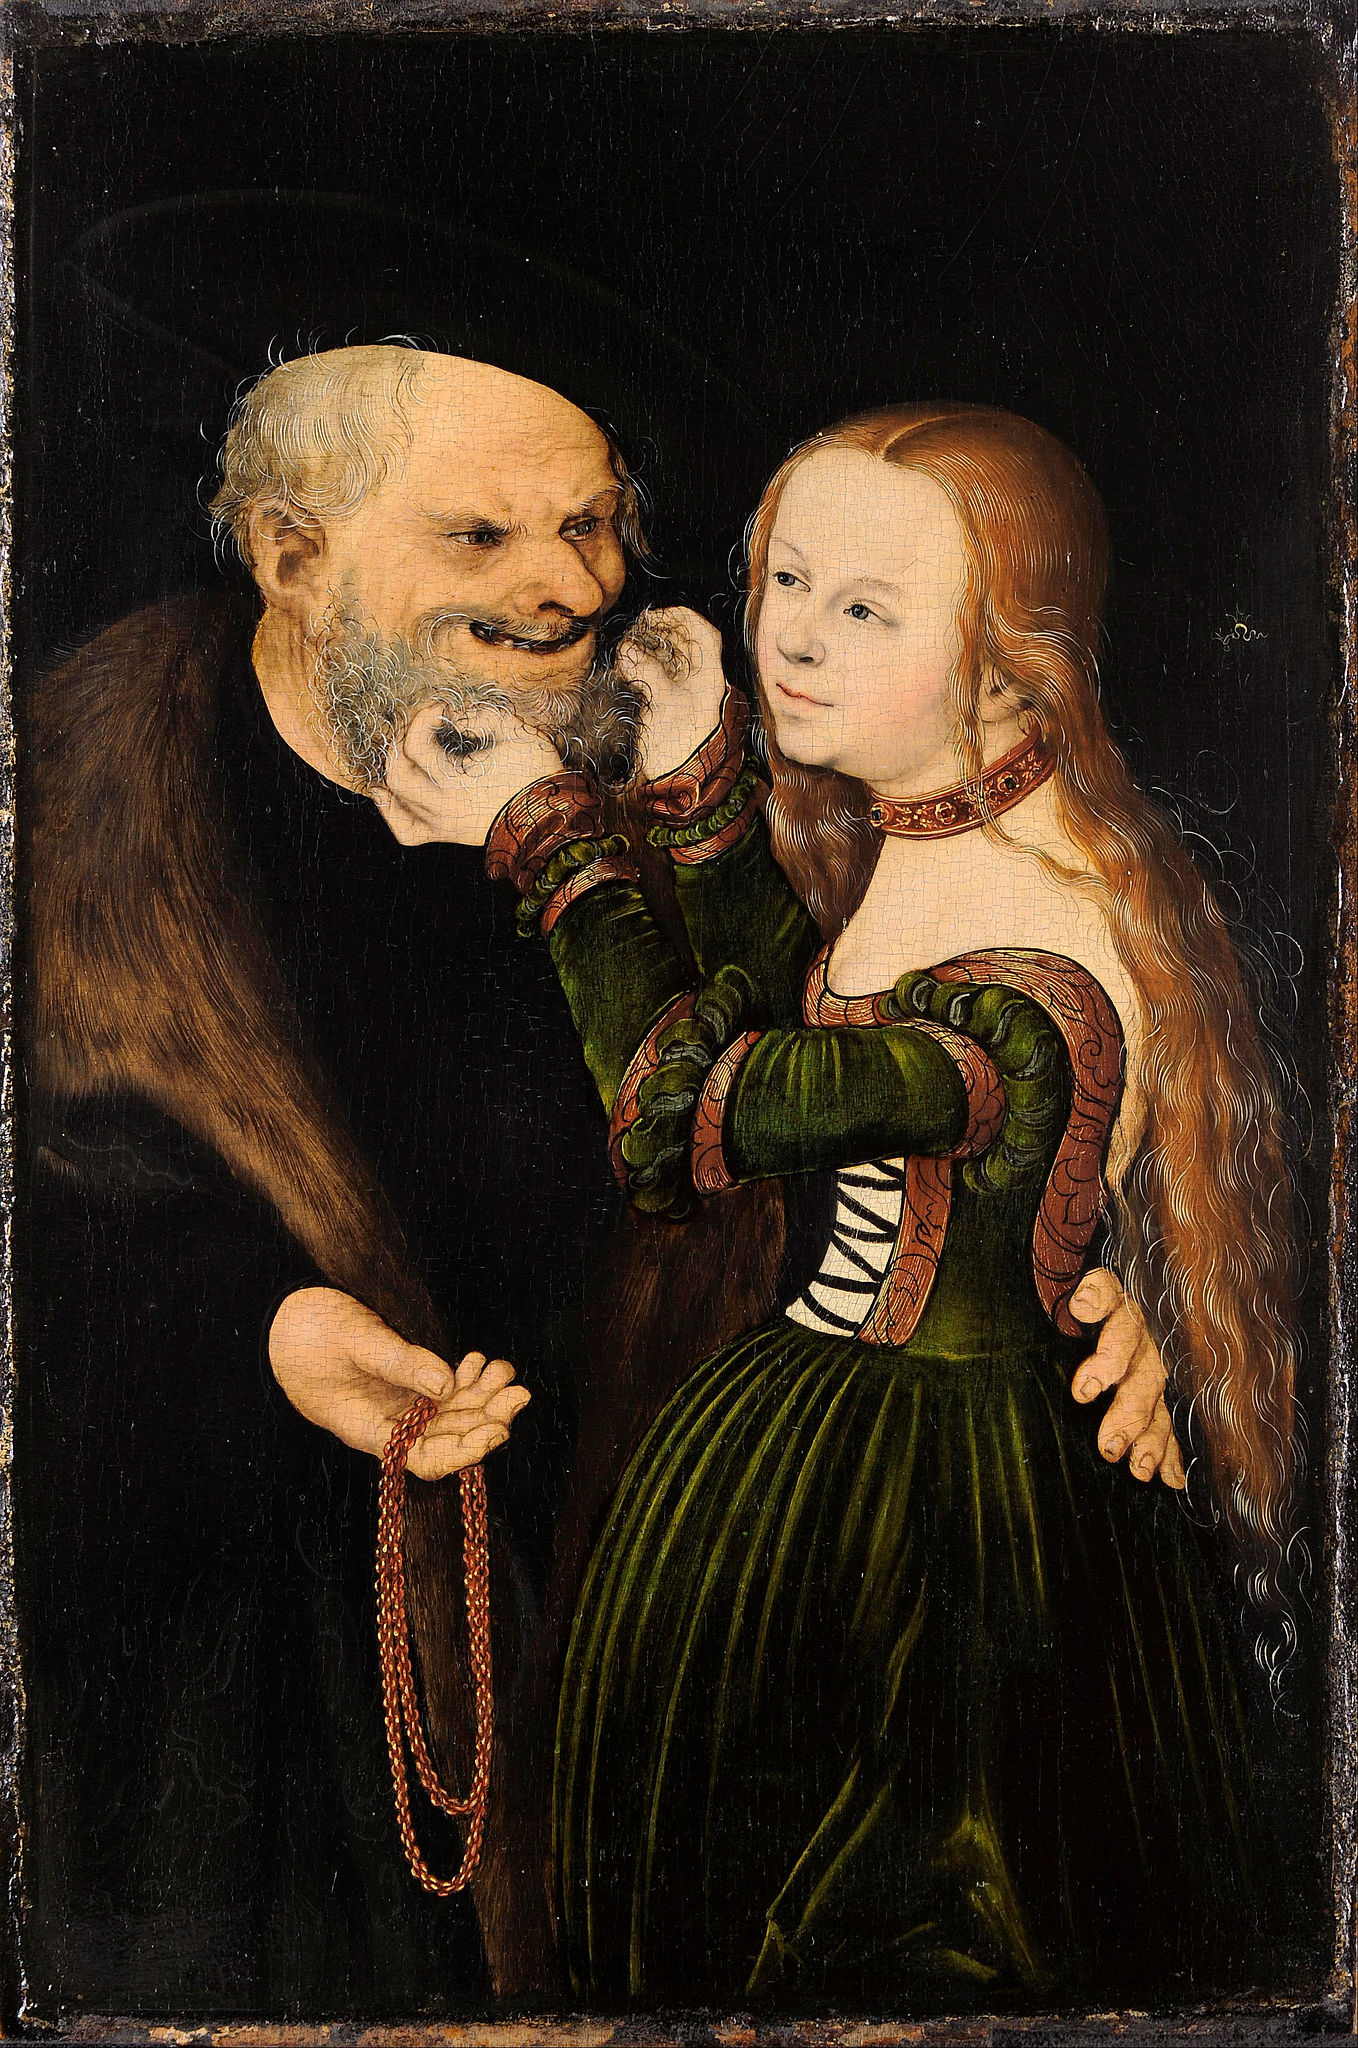 Das ungleiche Paar (Der verliebte Alte) by Lucas Cranach the Elder - ca. 1530 - 25,7 x 38,8 cm Museum Kunstpalast